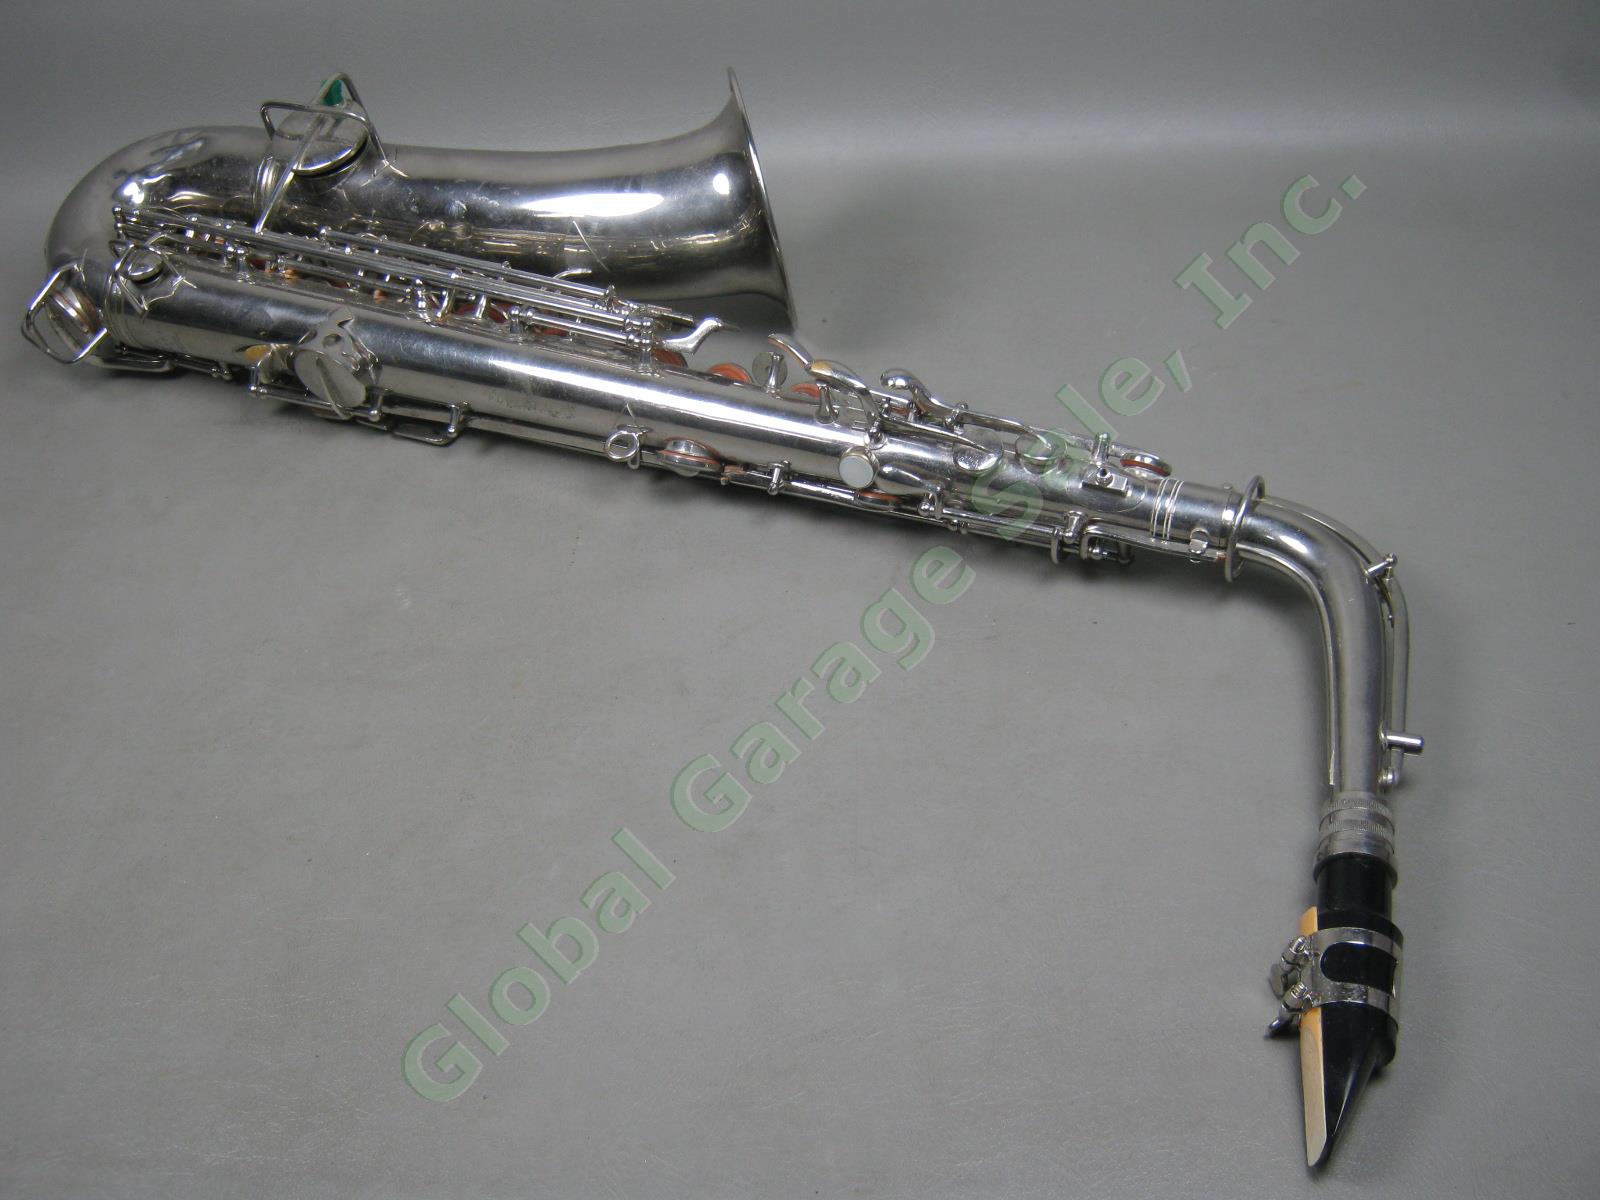 Vtg Antique C G CG Conn C-Melody Saxophone + Case 1119954 106159 L Patented 1914 2